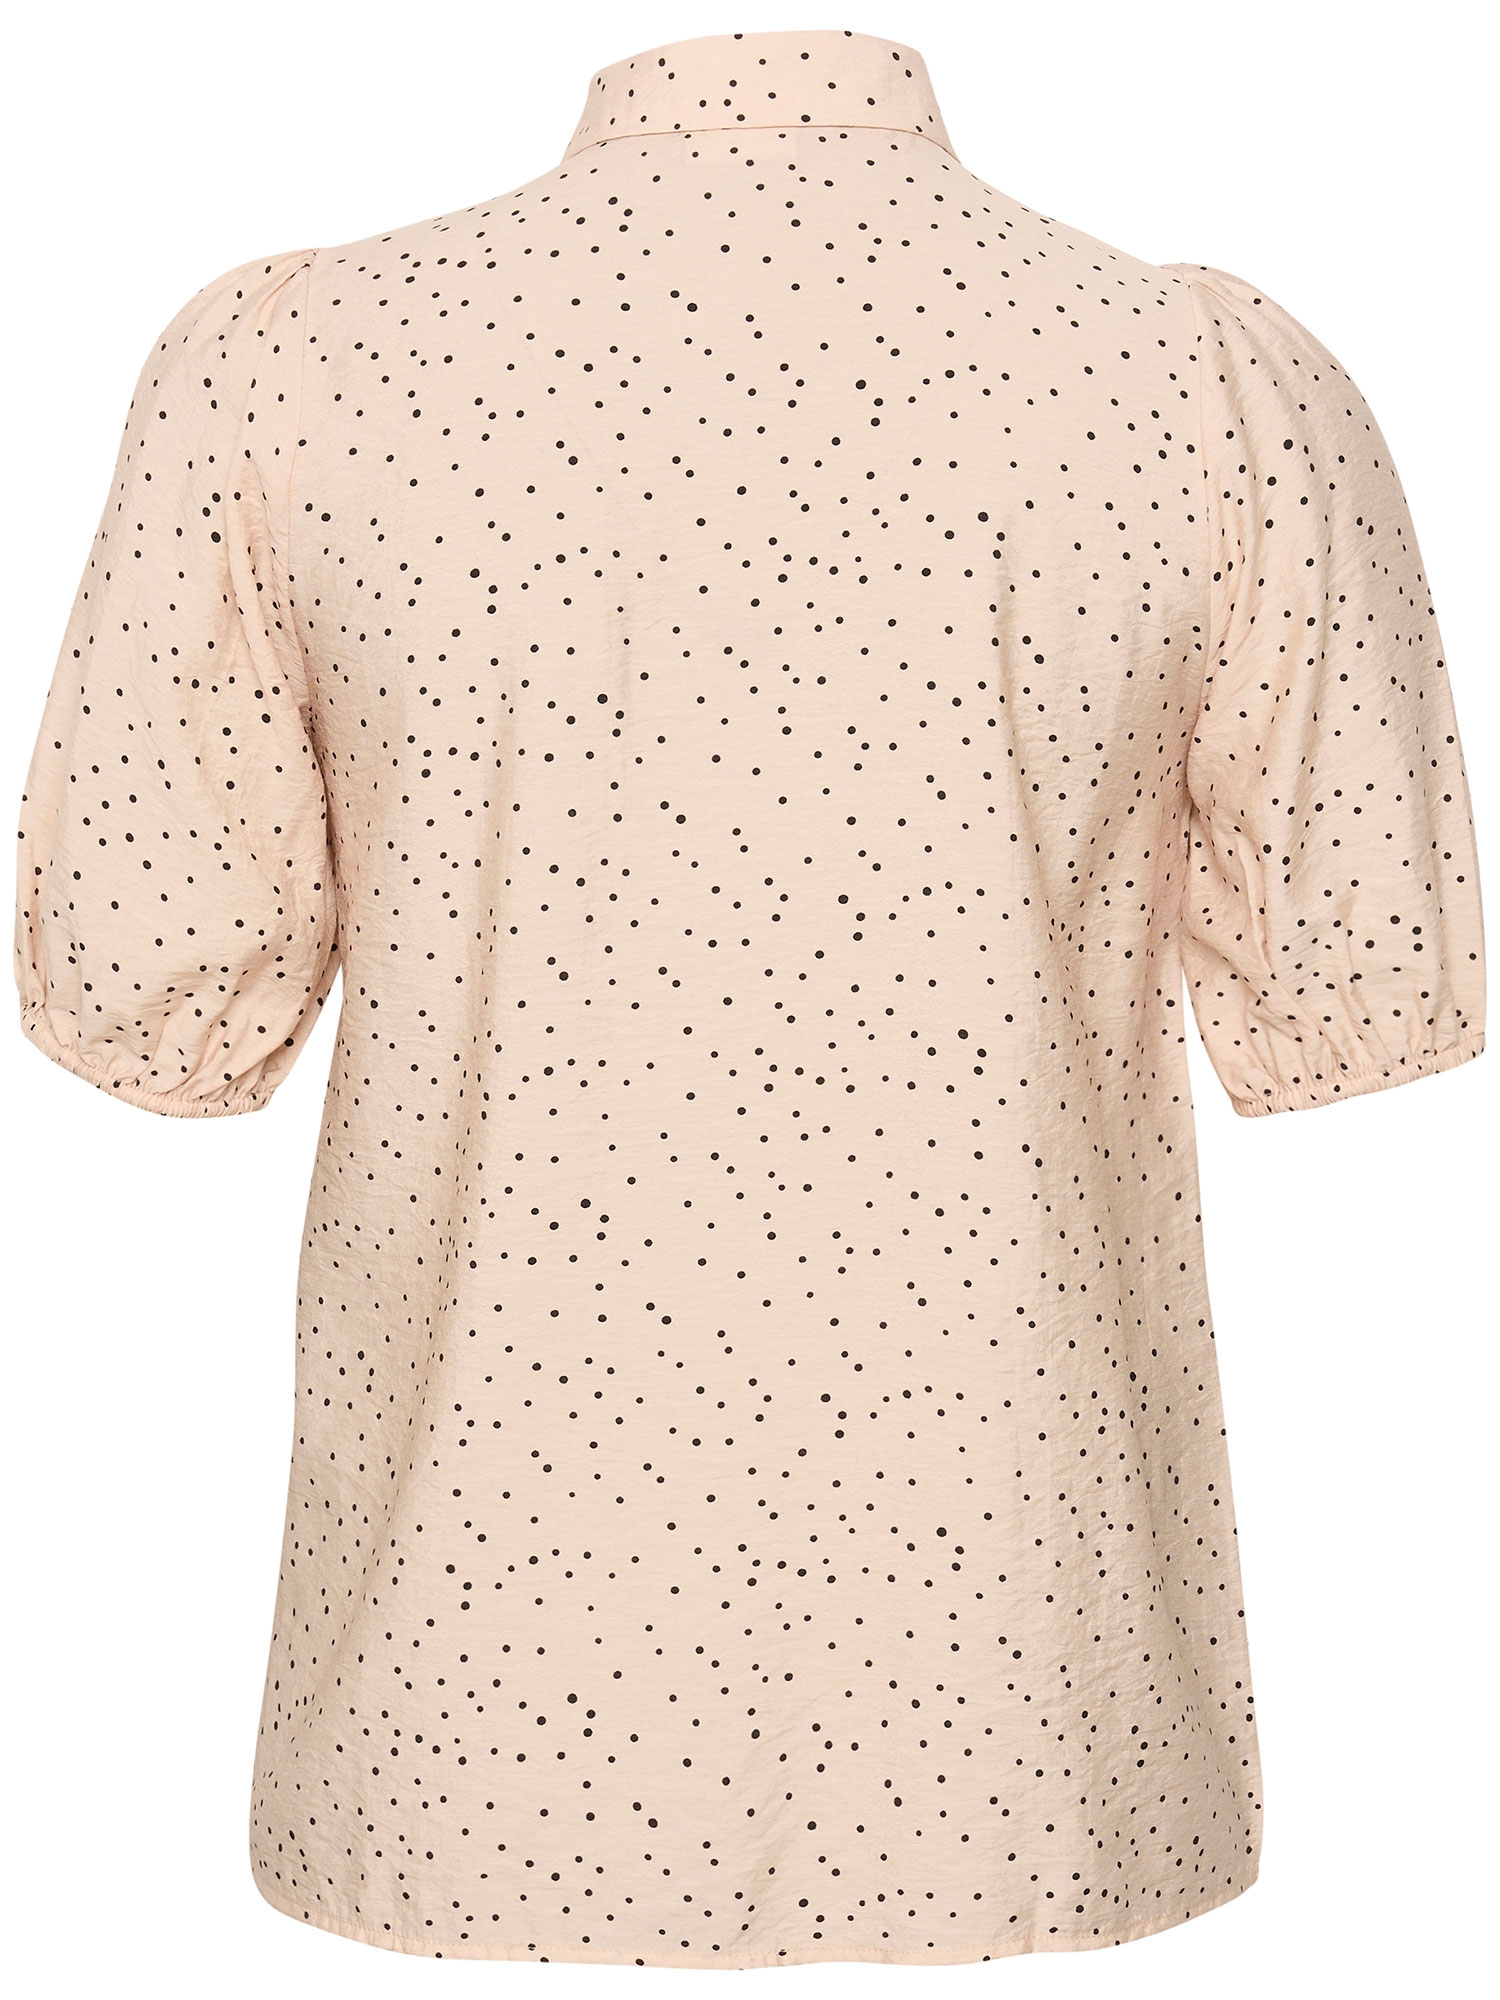 KC Diana - Sart rosa skjorte bluse med fine små sorte prikker fra Kaffe Curve